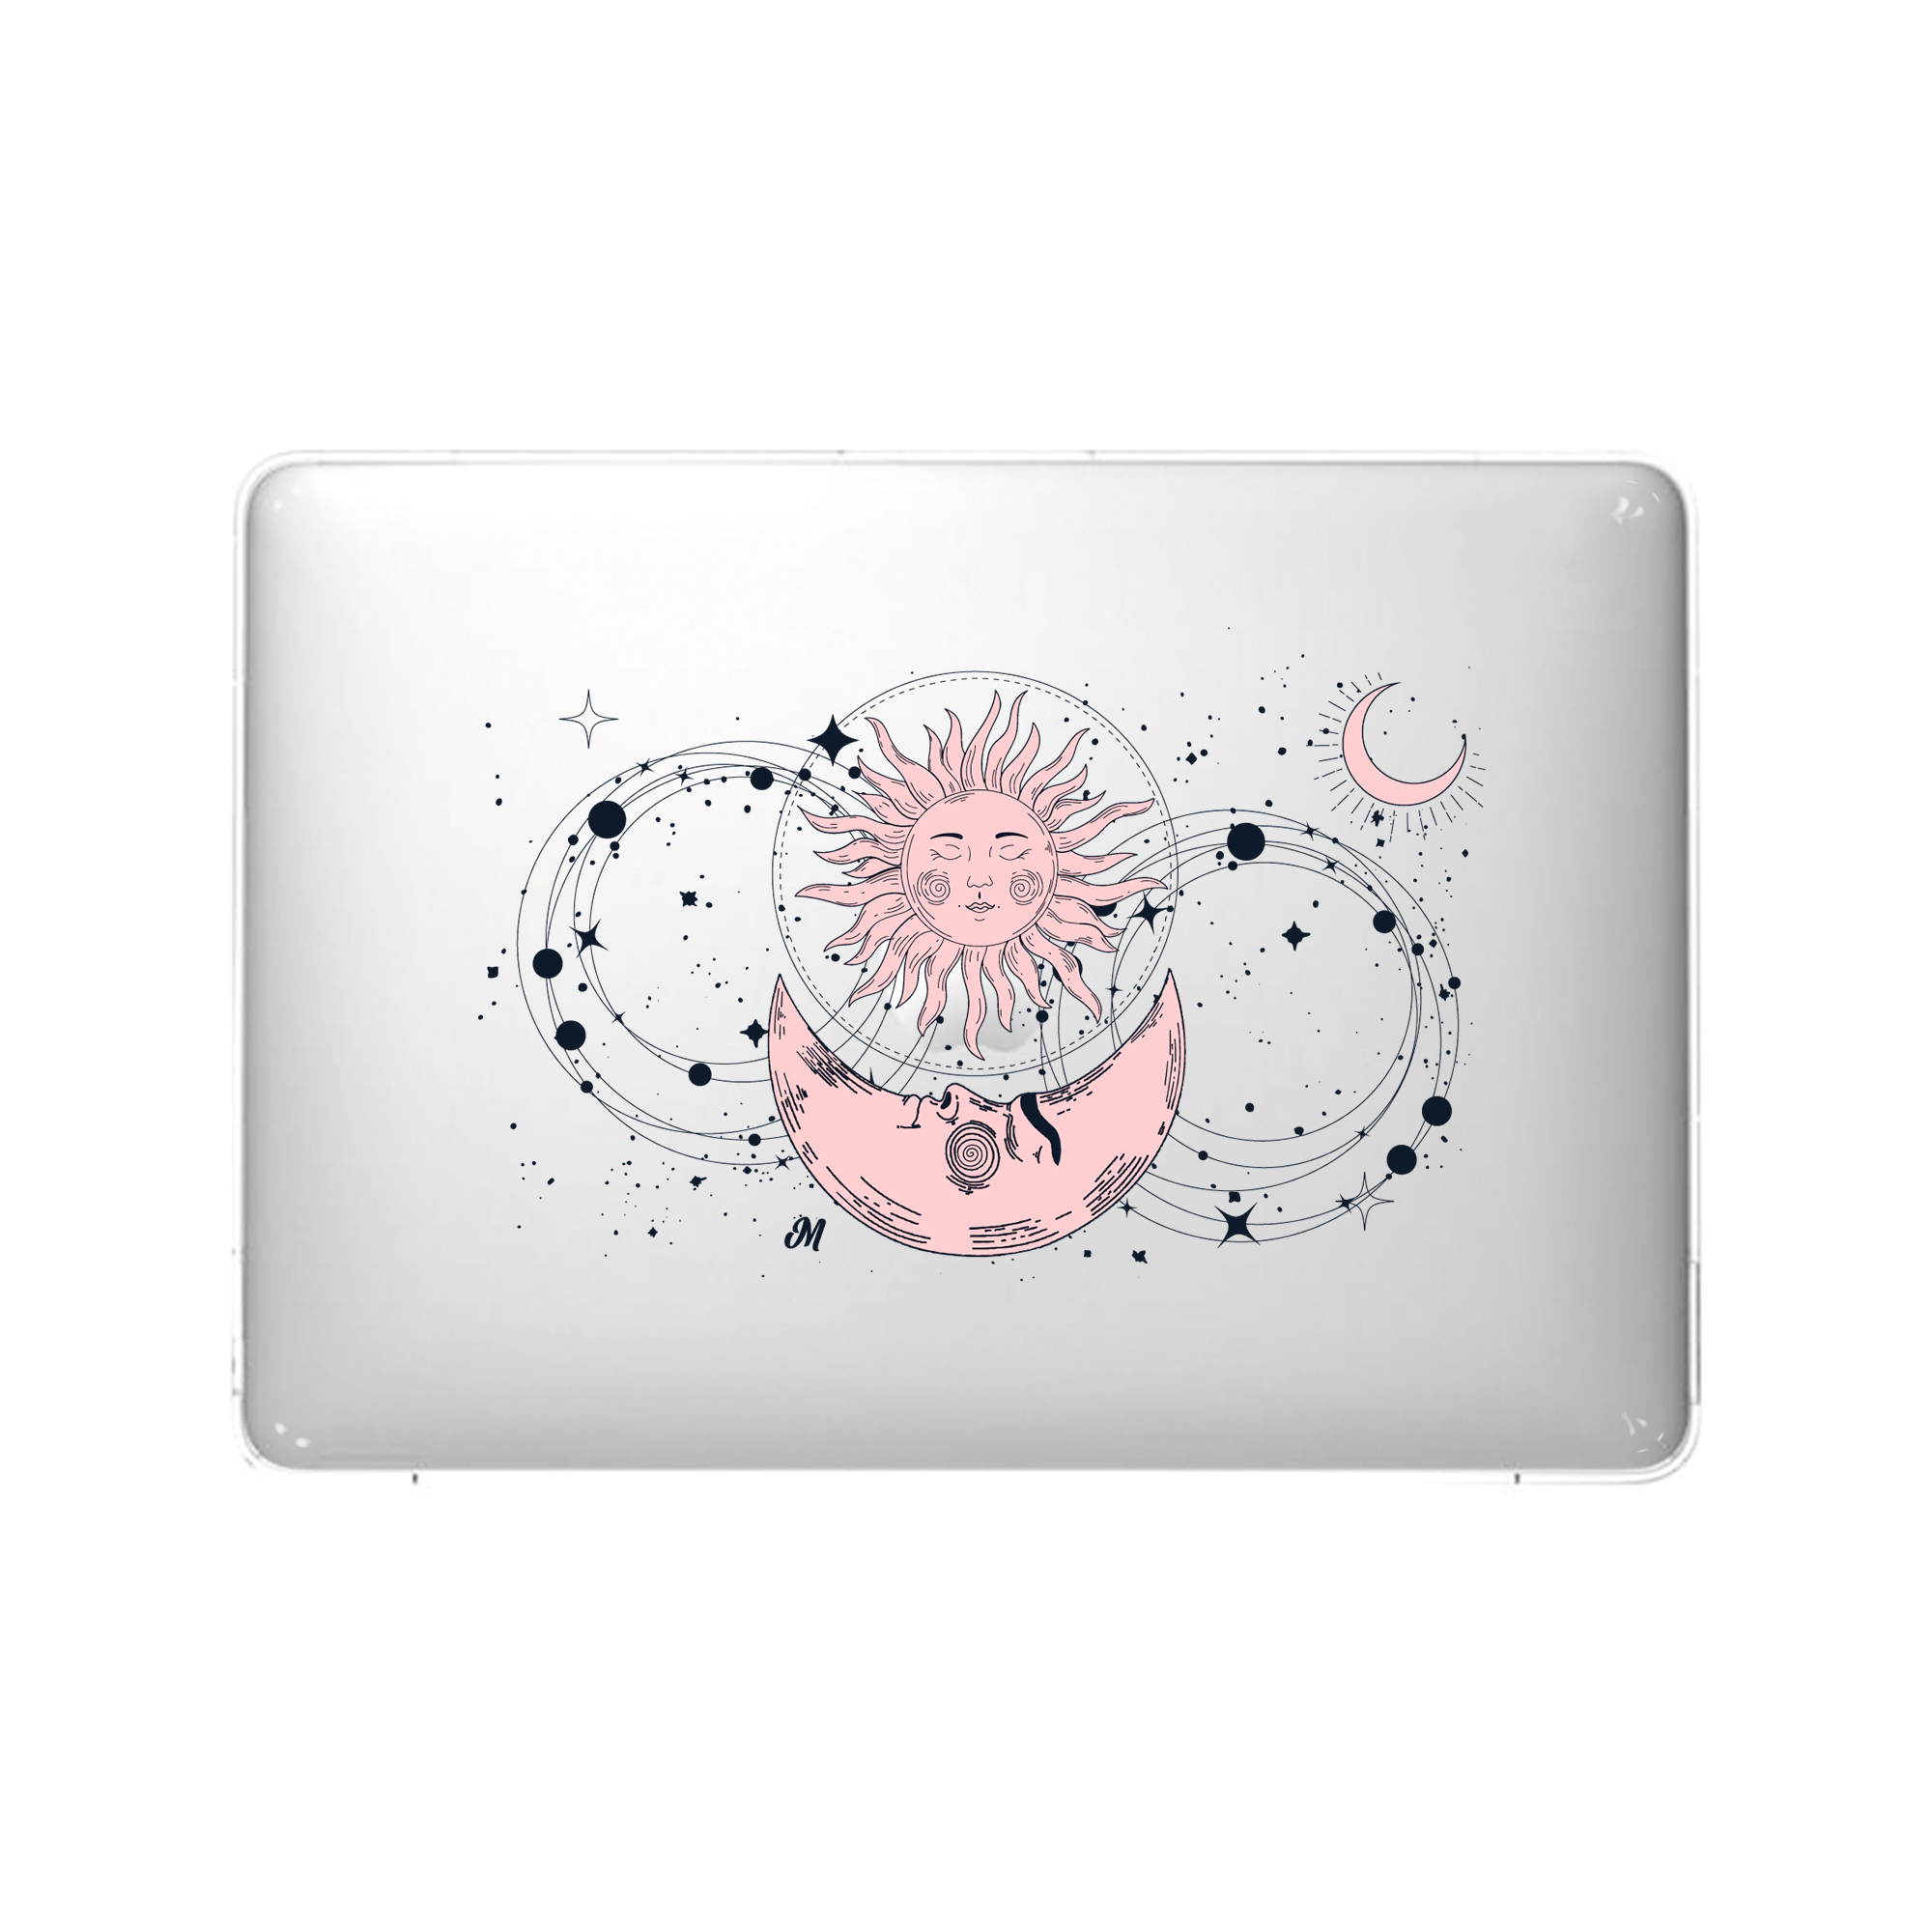 Astros MacBook Case - Mandala Cases